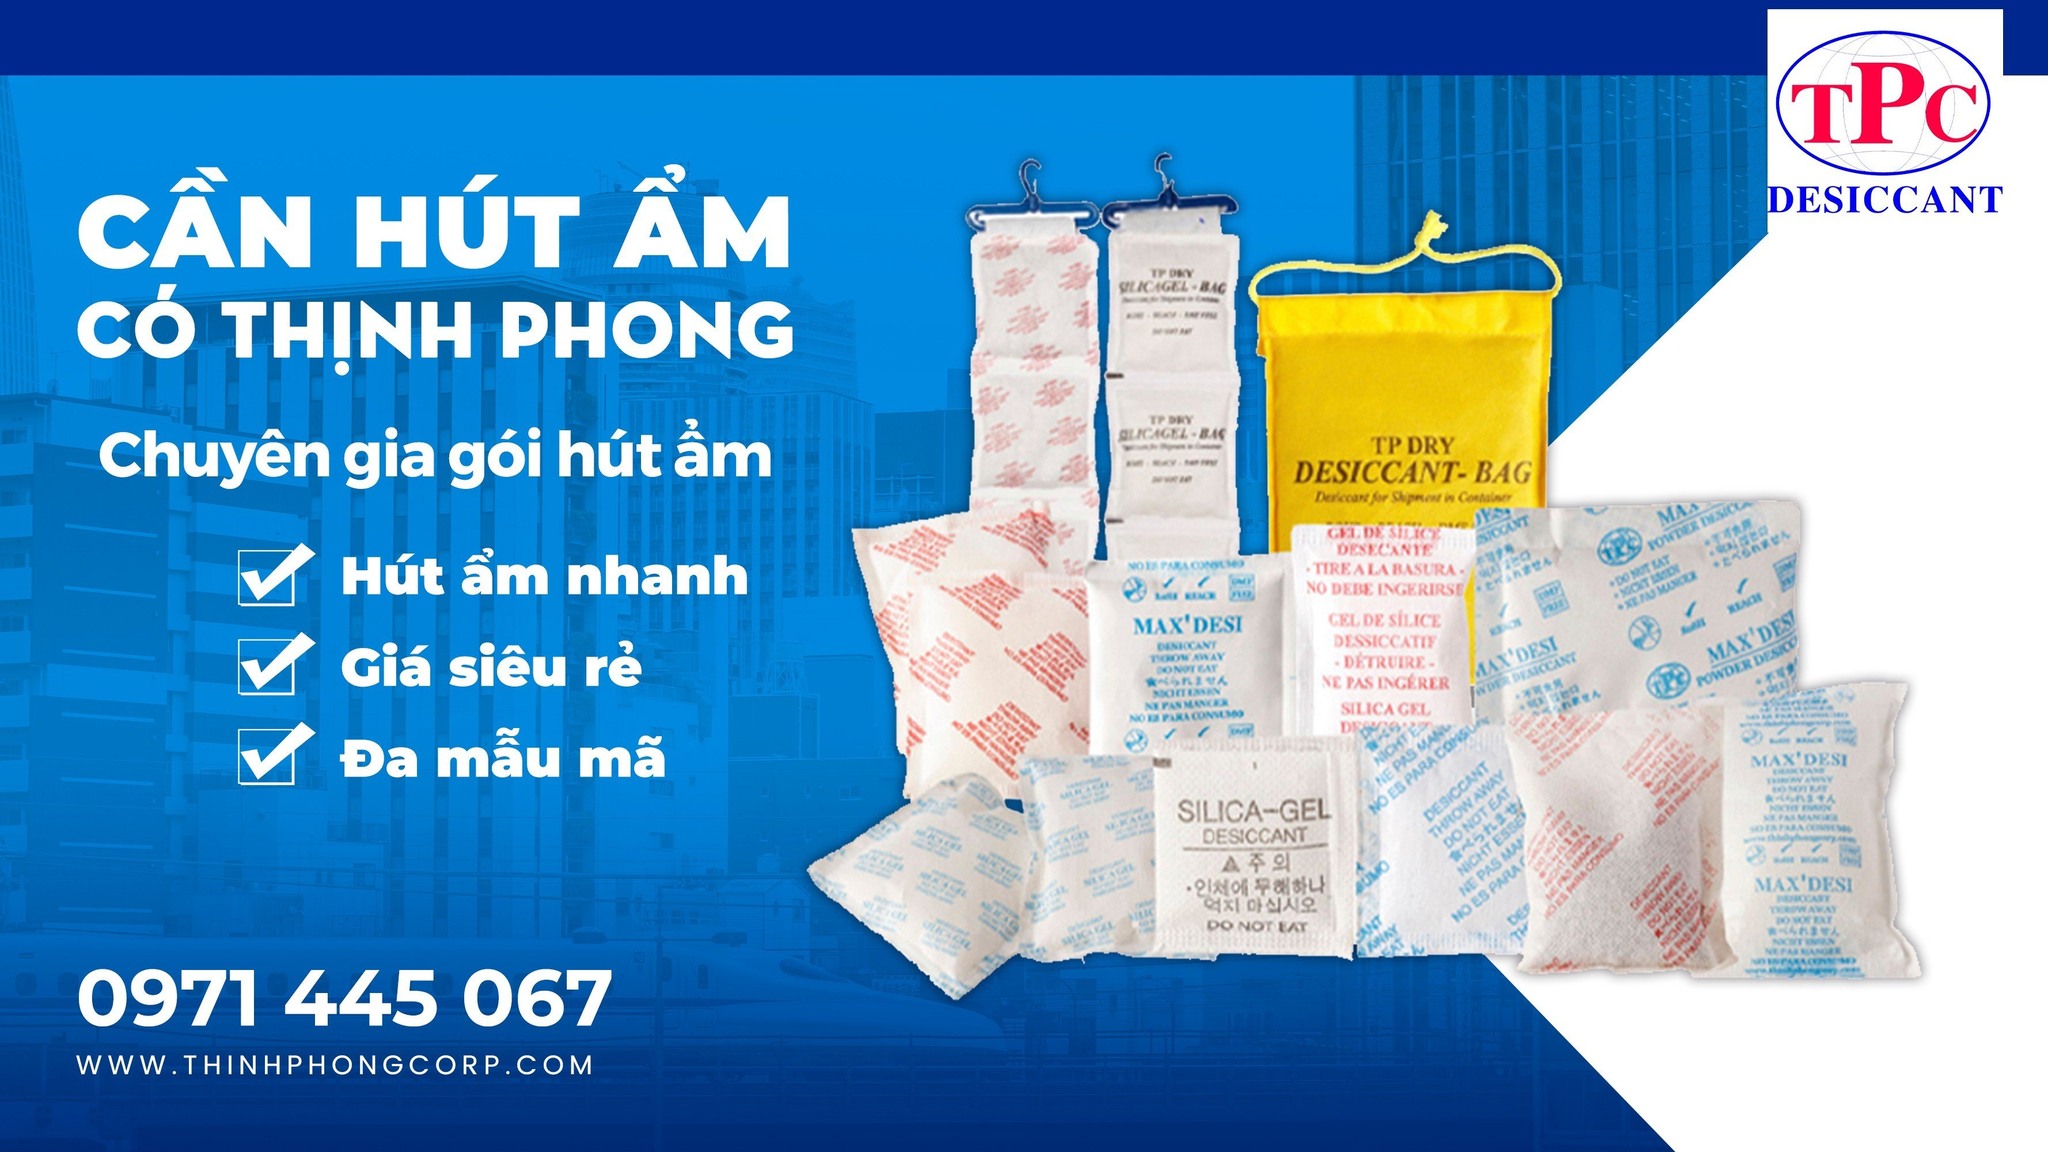 Vì sao nên mua Gói hút ẩm điện tử tại Thịnh Phong Corp